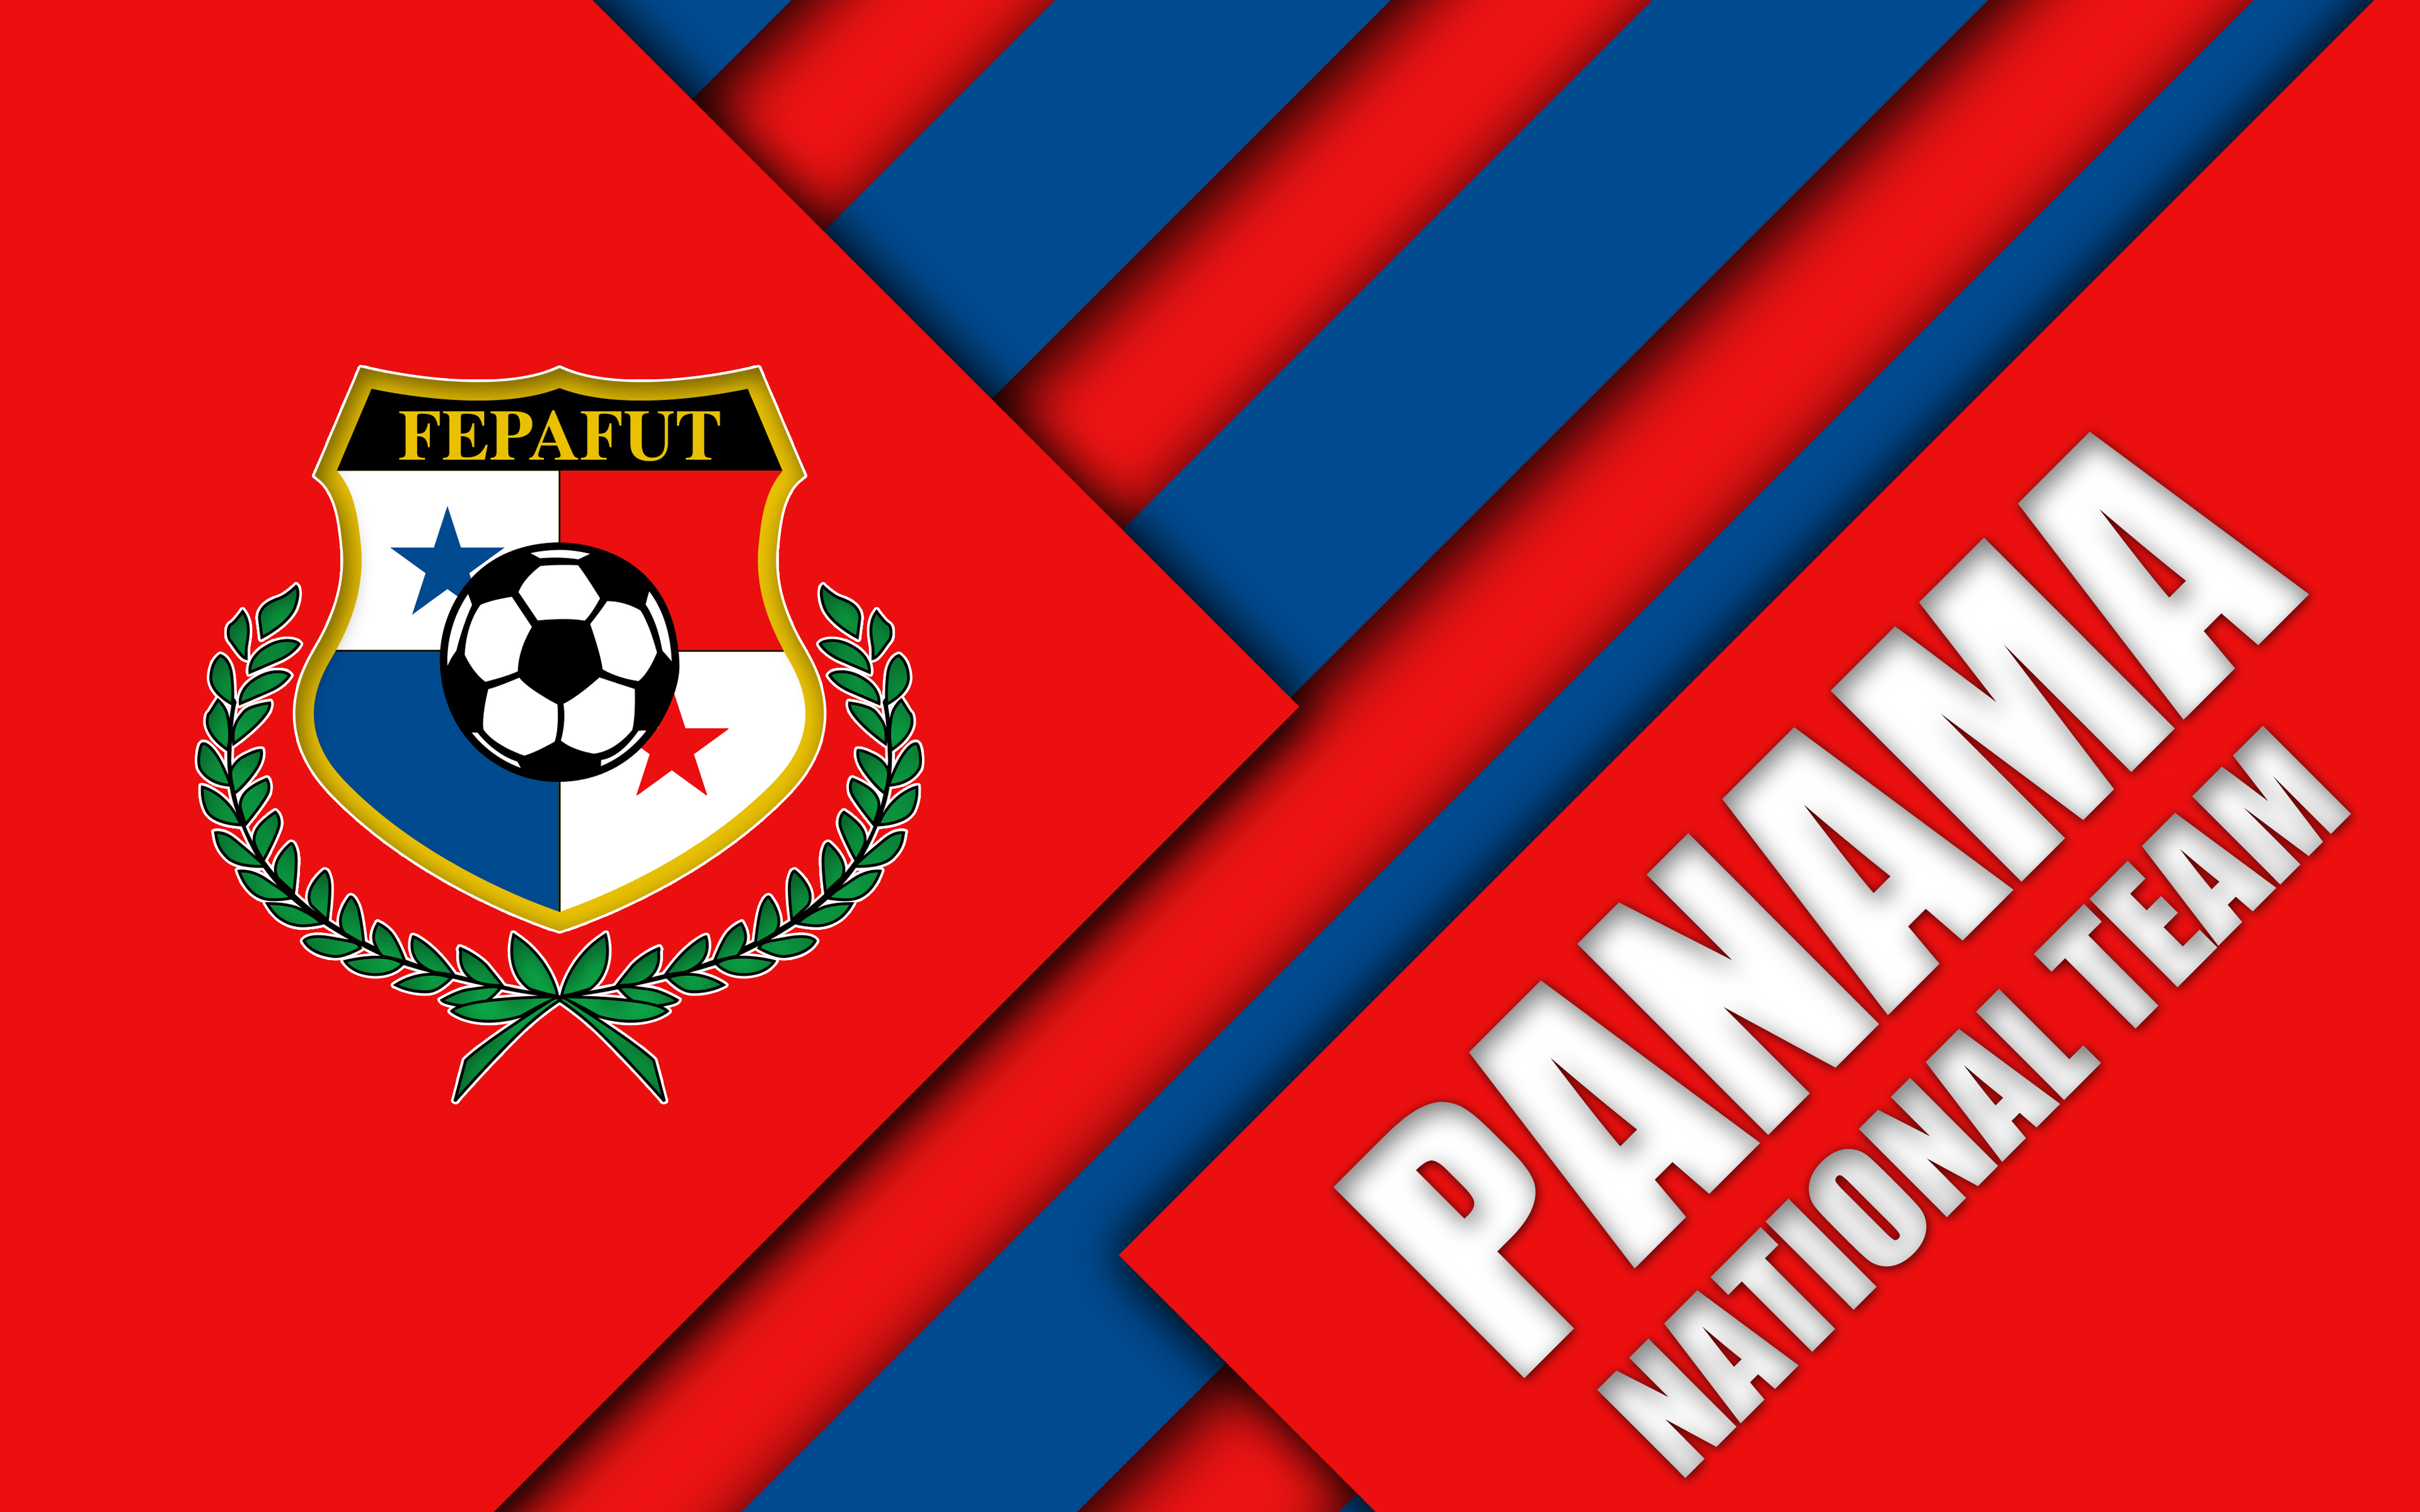 Melhores papéis de parede de Seleção Nacional De Futebol Do Panamá para tela do telefone